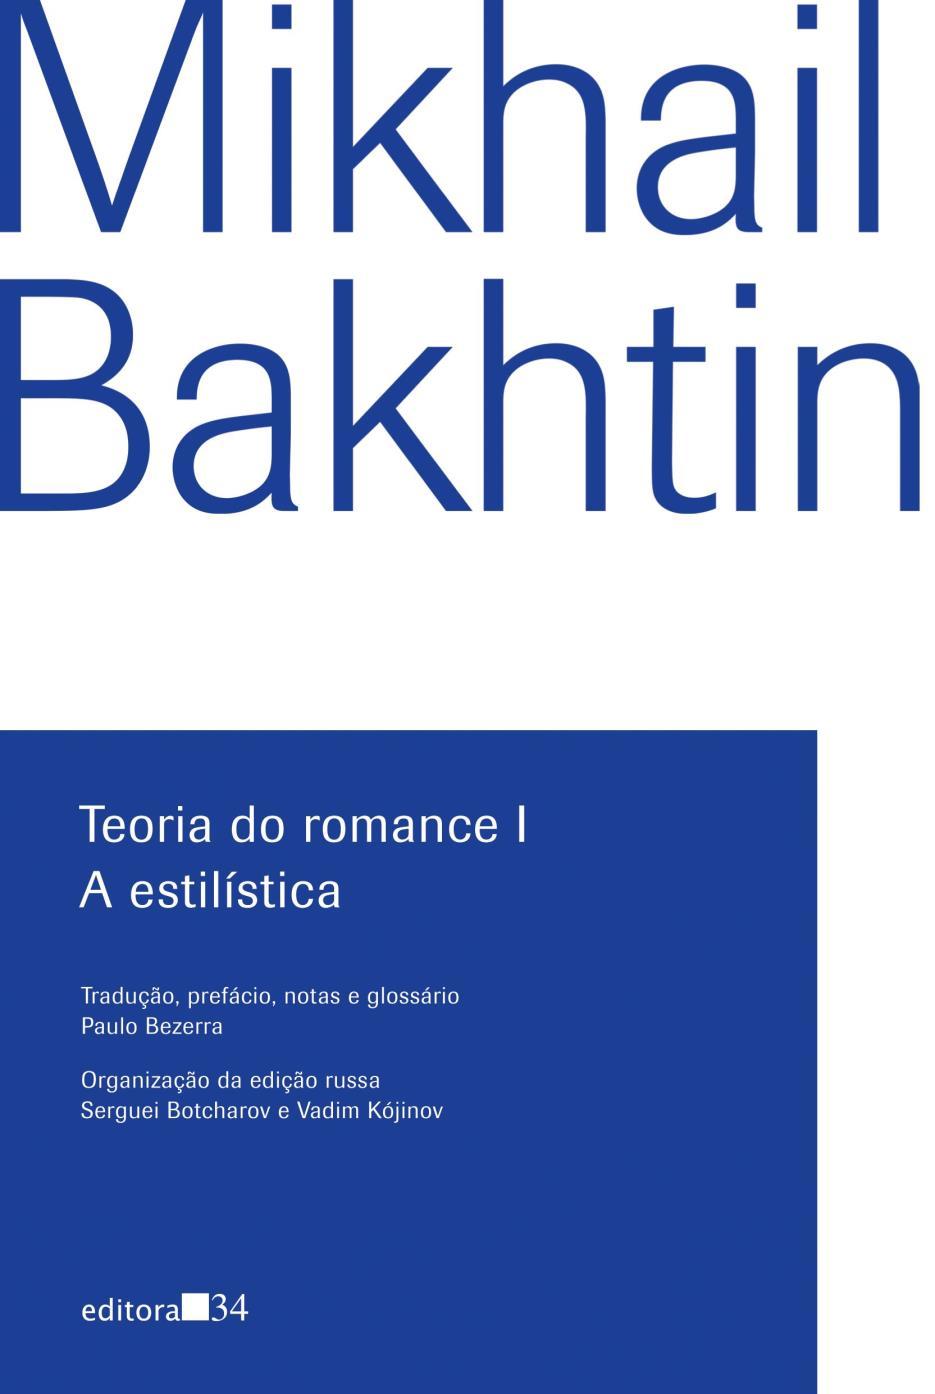 BAKHTIN, Mikhail. Teoria do romance I: a estilística [Theory of the Novel I: Stylistics].